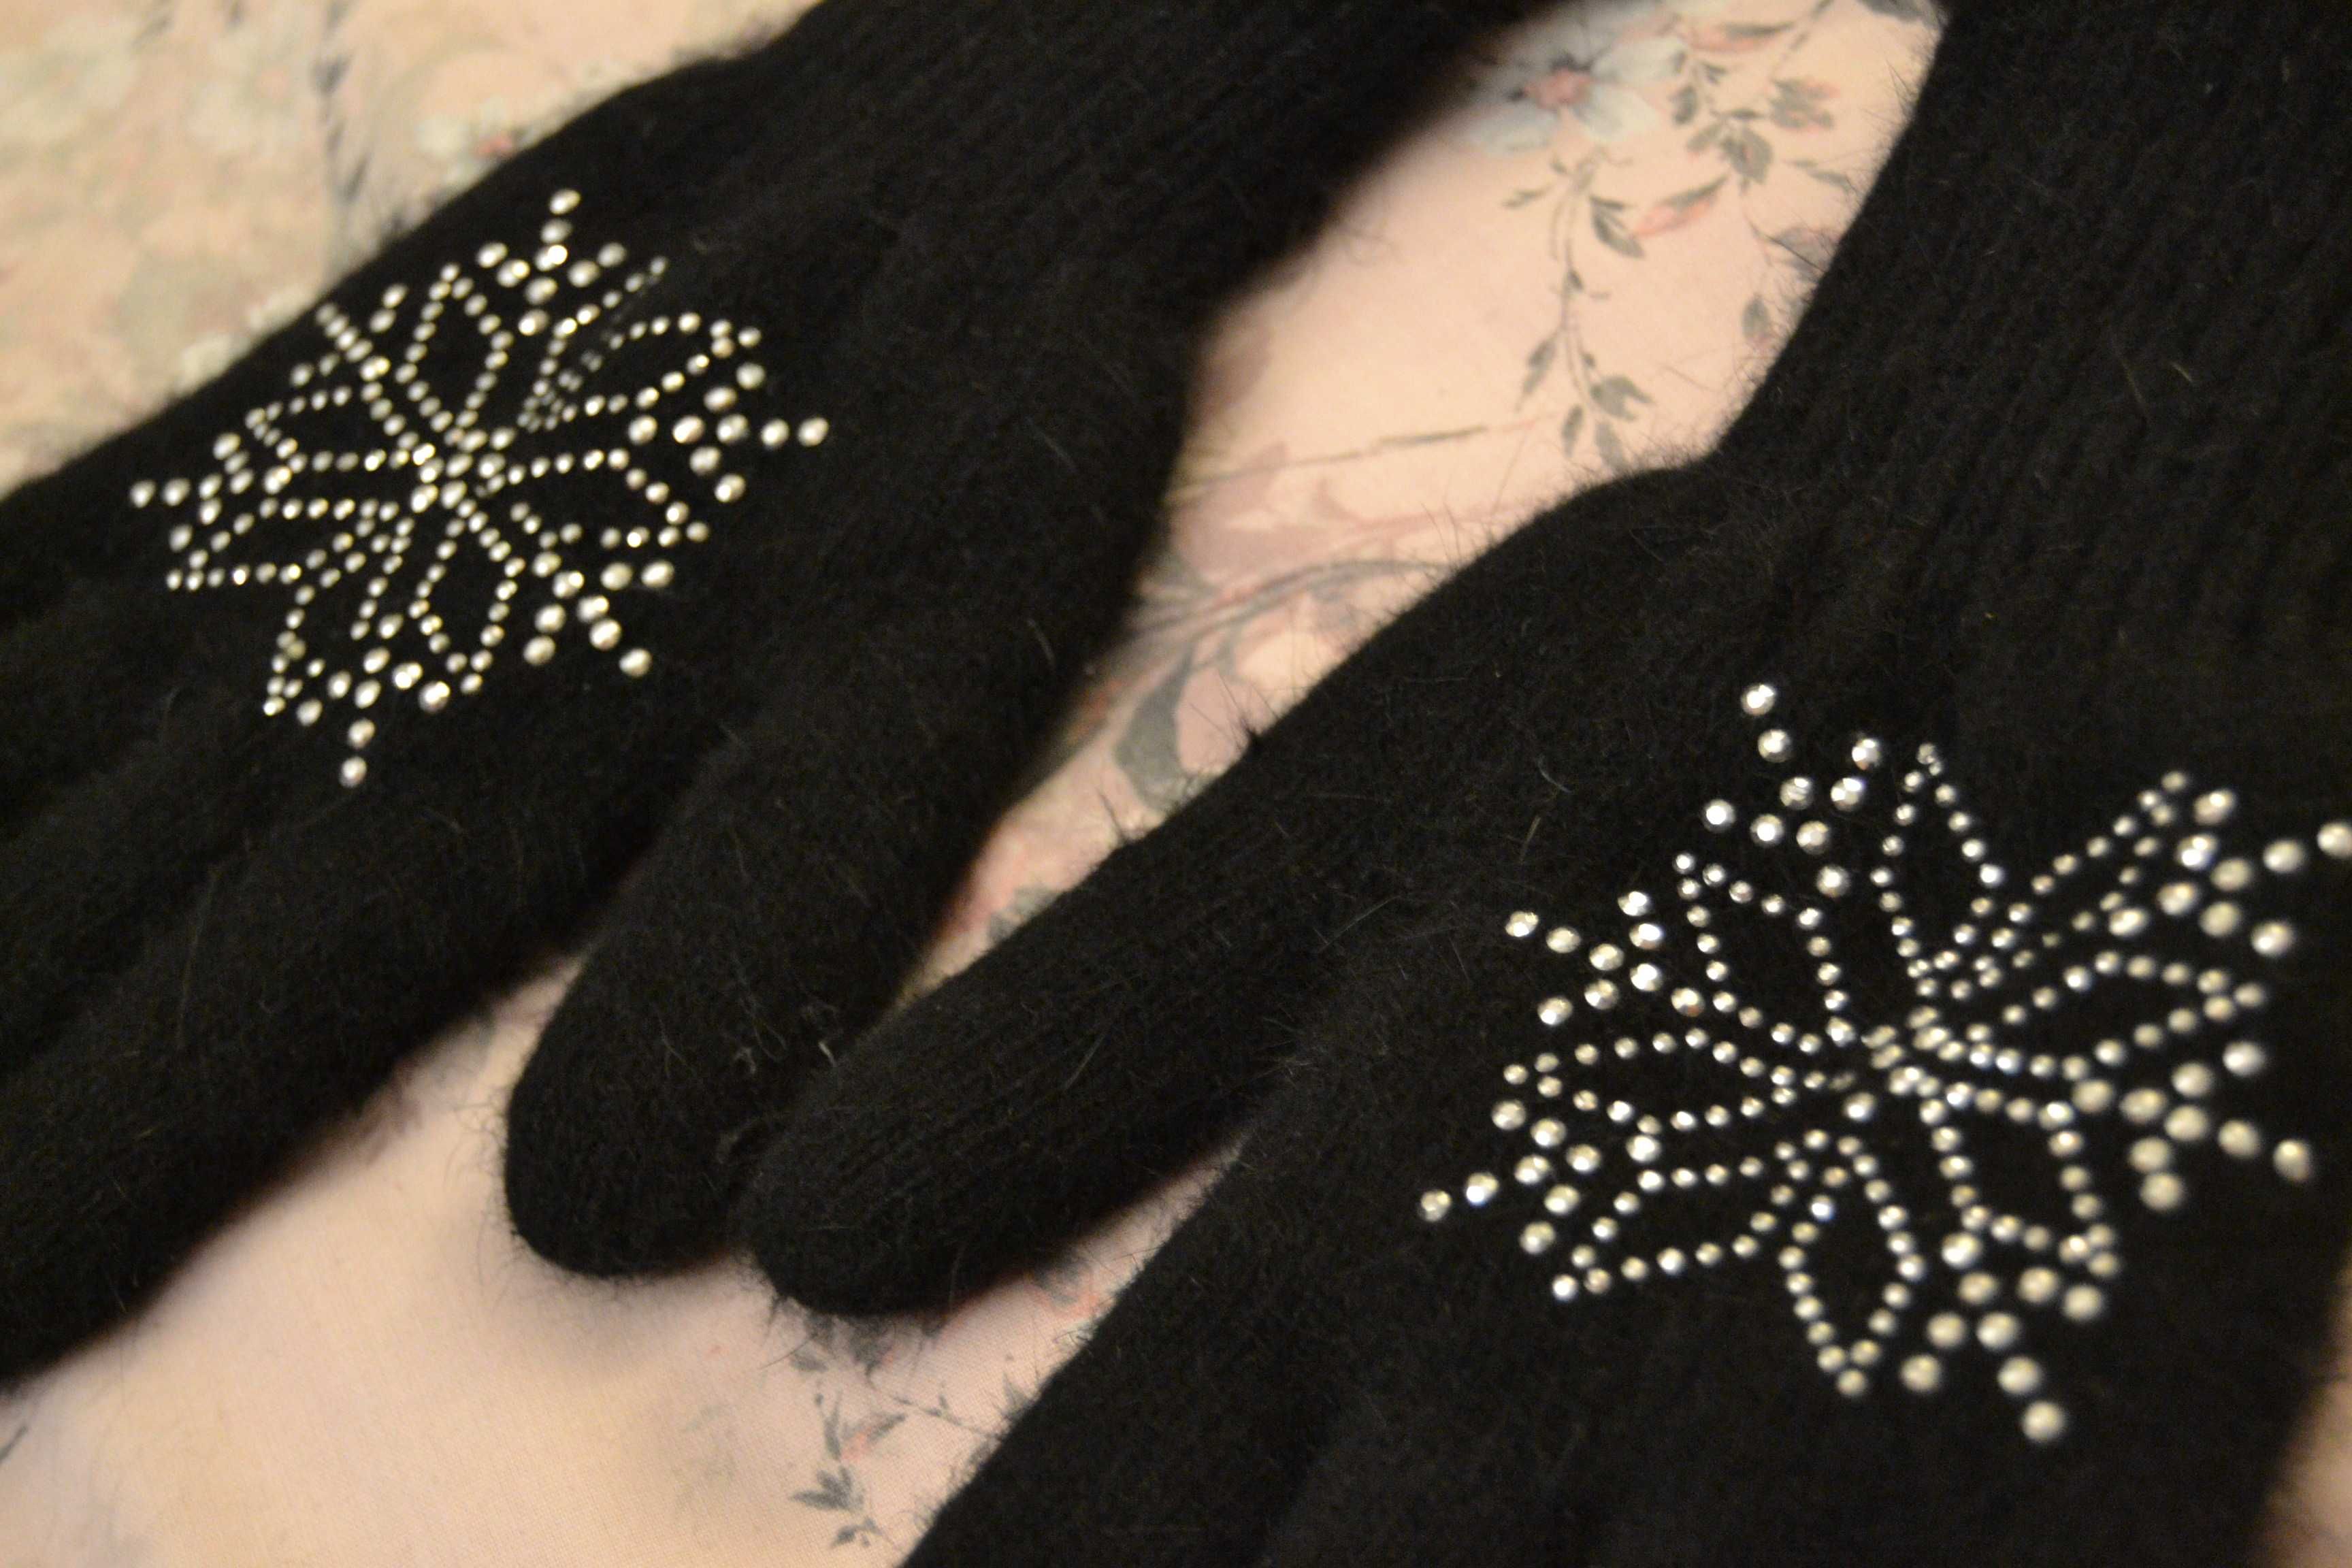 Grube czarne rękawiczki  bardzo miłe w dotyku na długie i smukłe palce